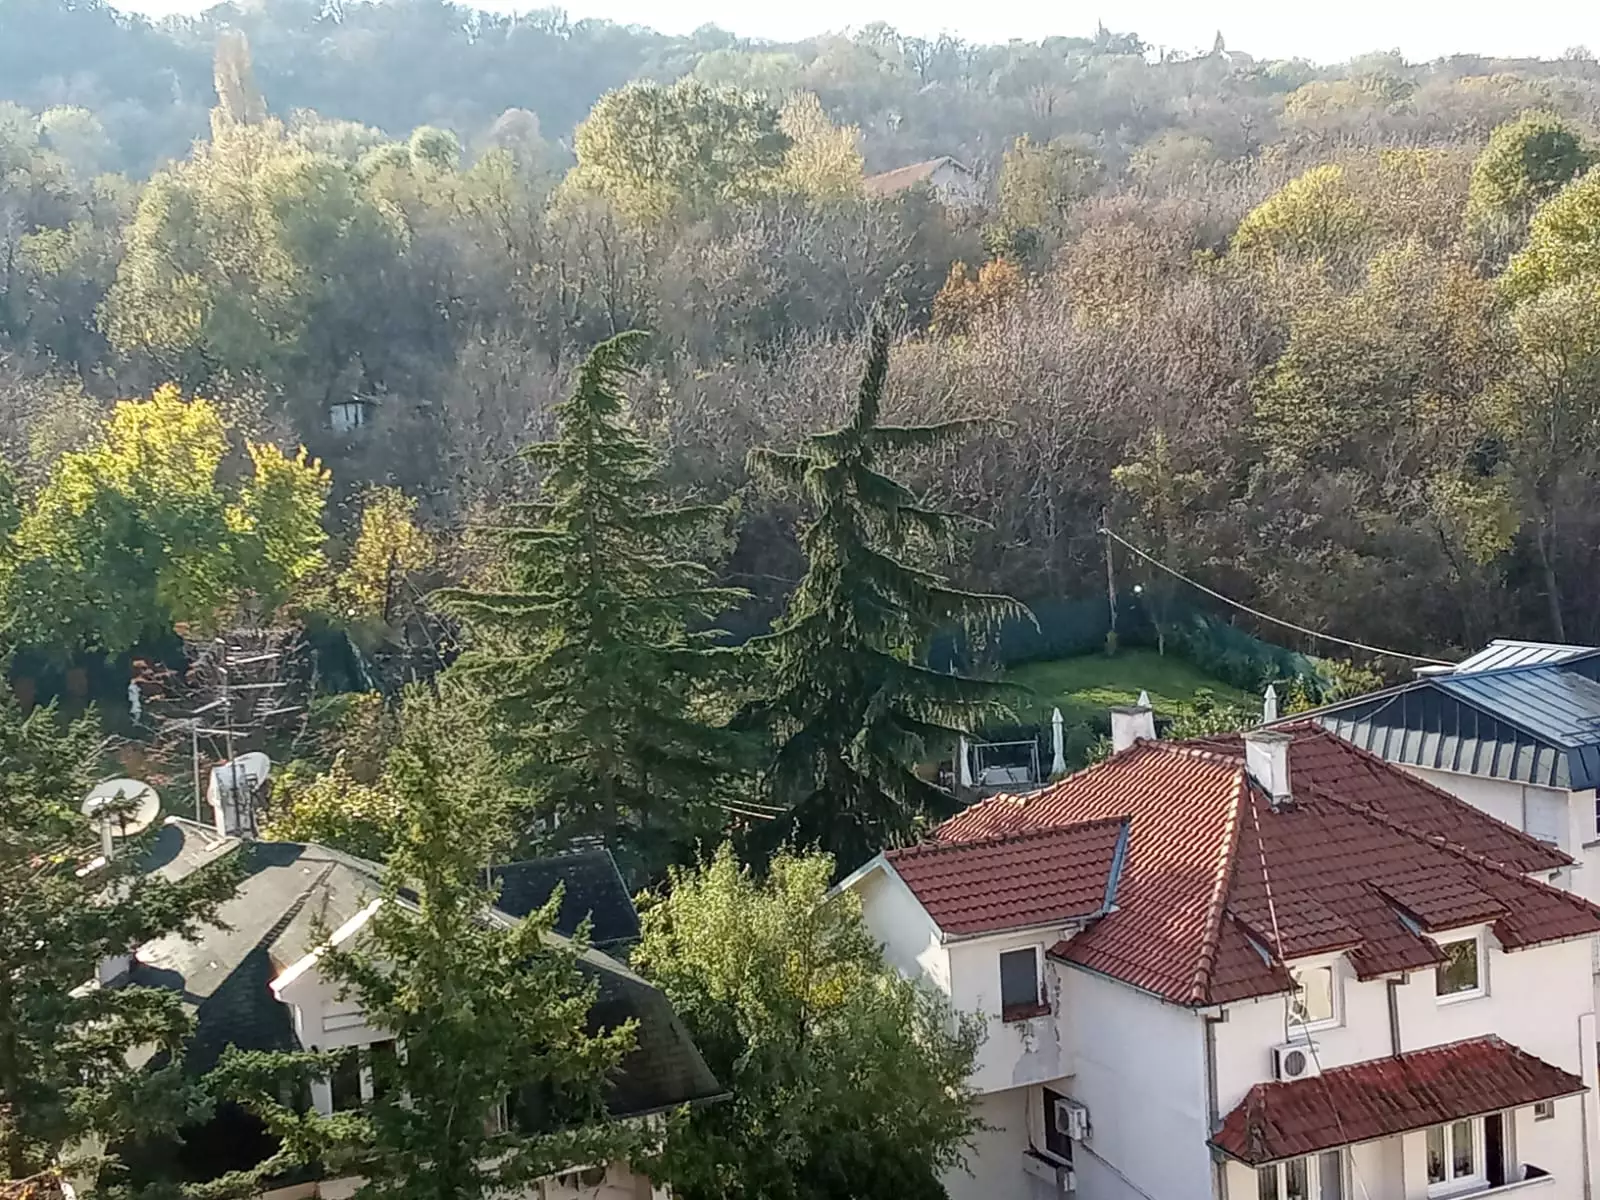 Kauf einer Wohnung mit Terrasse in Belgrad Suche nach Wohnimmobilien bitcoin btc cryptocurrency crypto real estate property